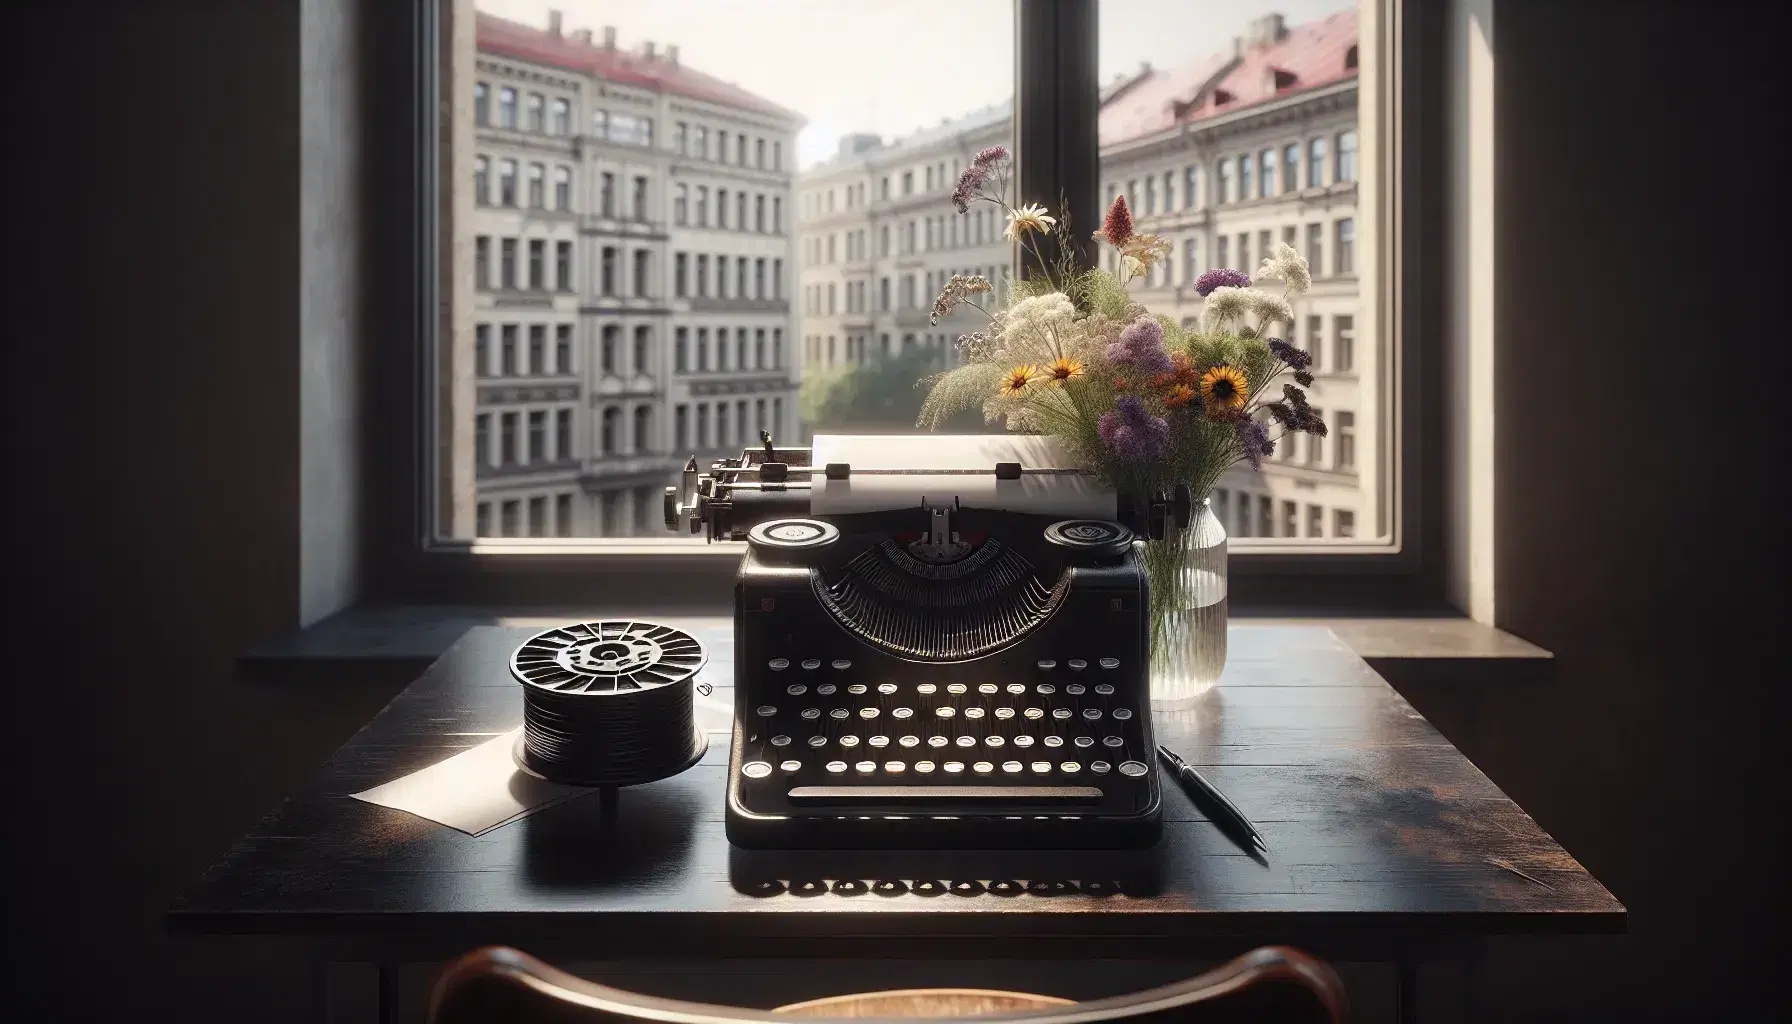 Máquina de escribir antigua con teclas redondas sobre mesa de madera oscura, papel listo para escribir, ventana abierta con vista urbana y jarrón con flores silvestres.